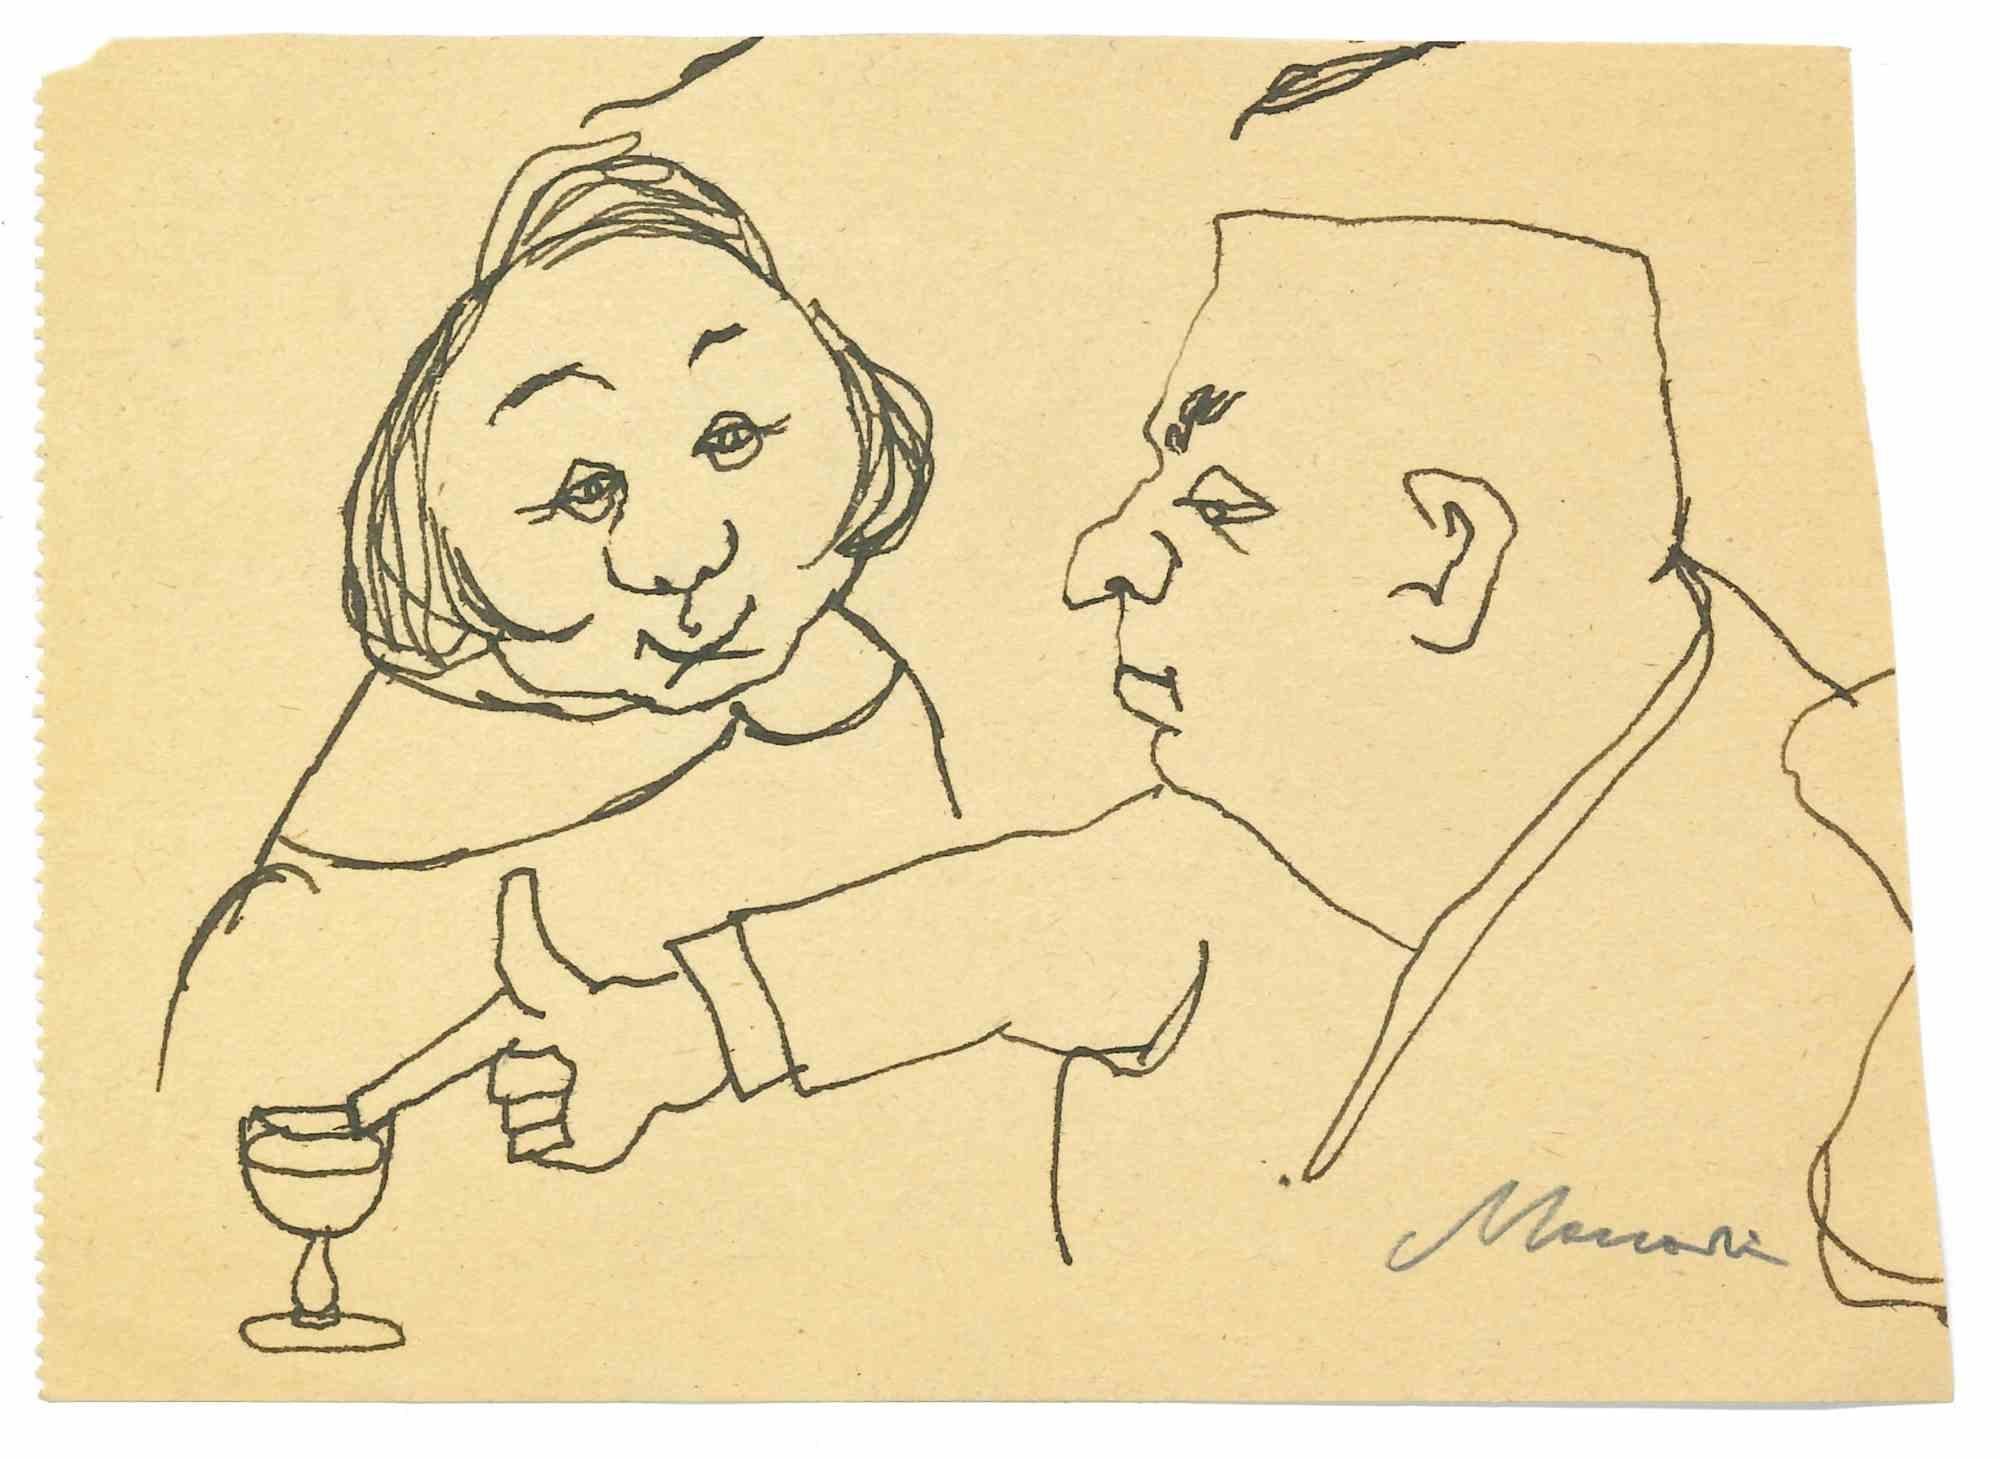 Drinking est un dessin à l'encre de Chine réalisé par Mino Maccari (1924-1989) au milieu du 20e siècle.

Signé à la main.

Bon état avec de légères rousseurs.

Mino Maccari (Sienne, 1924-Rome, 16 juin 1989) est un écrivain, peintre, graveur et